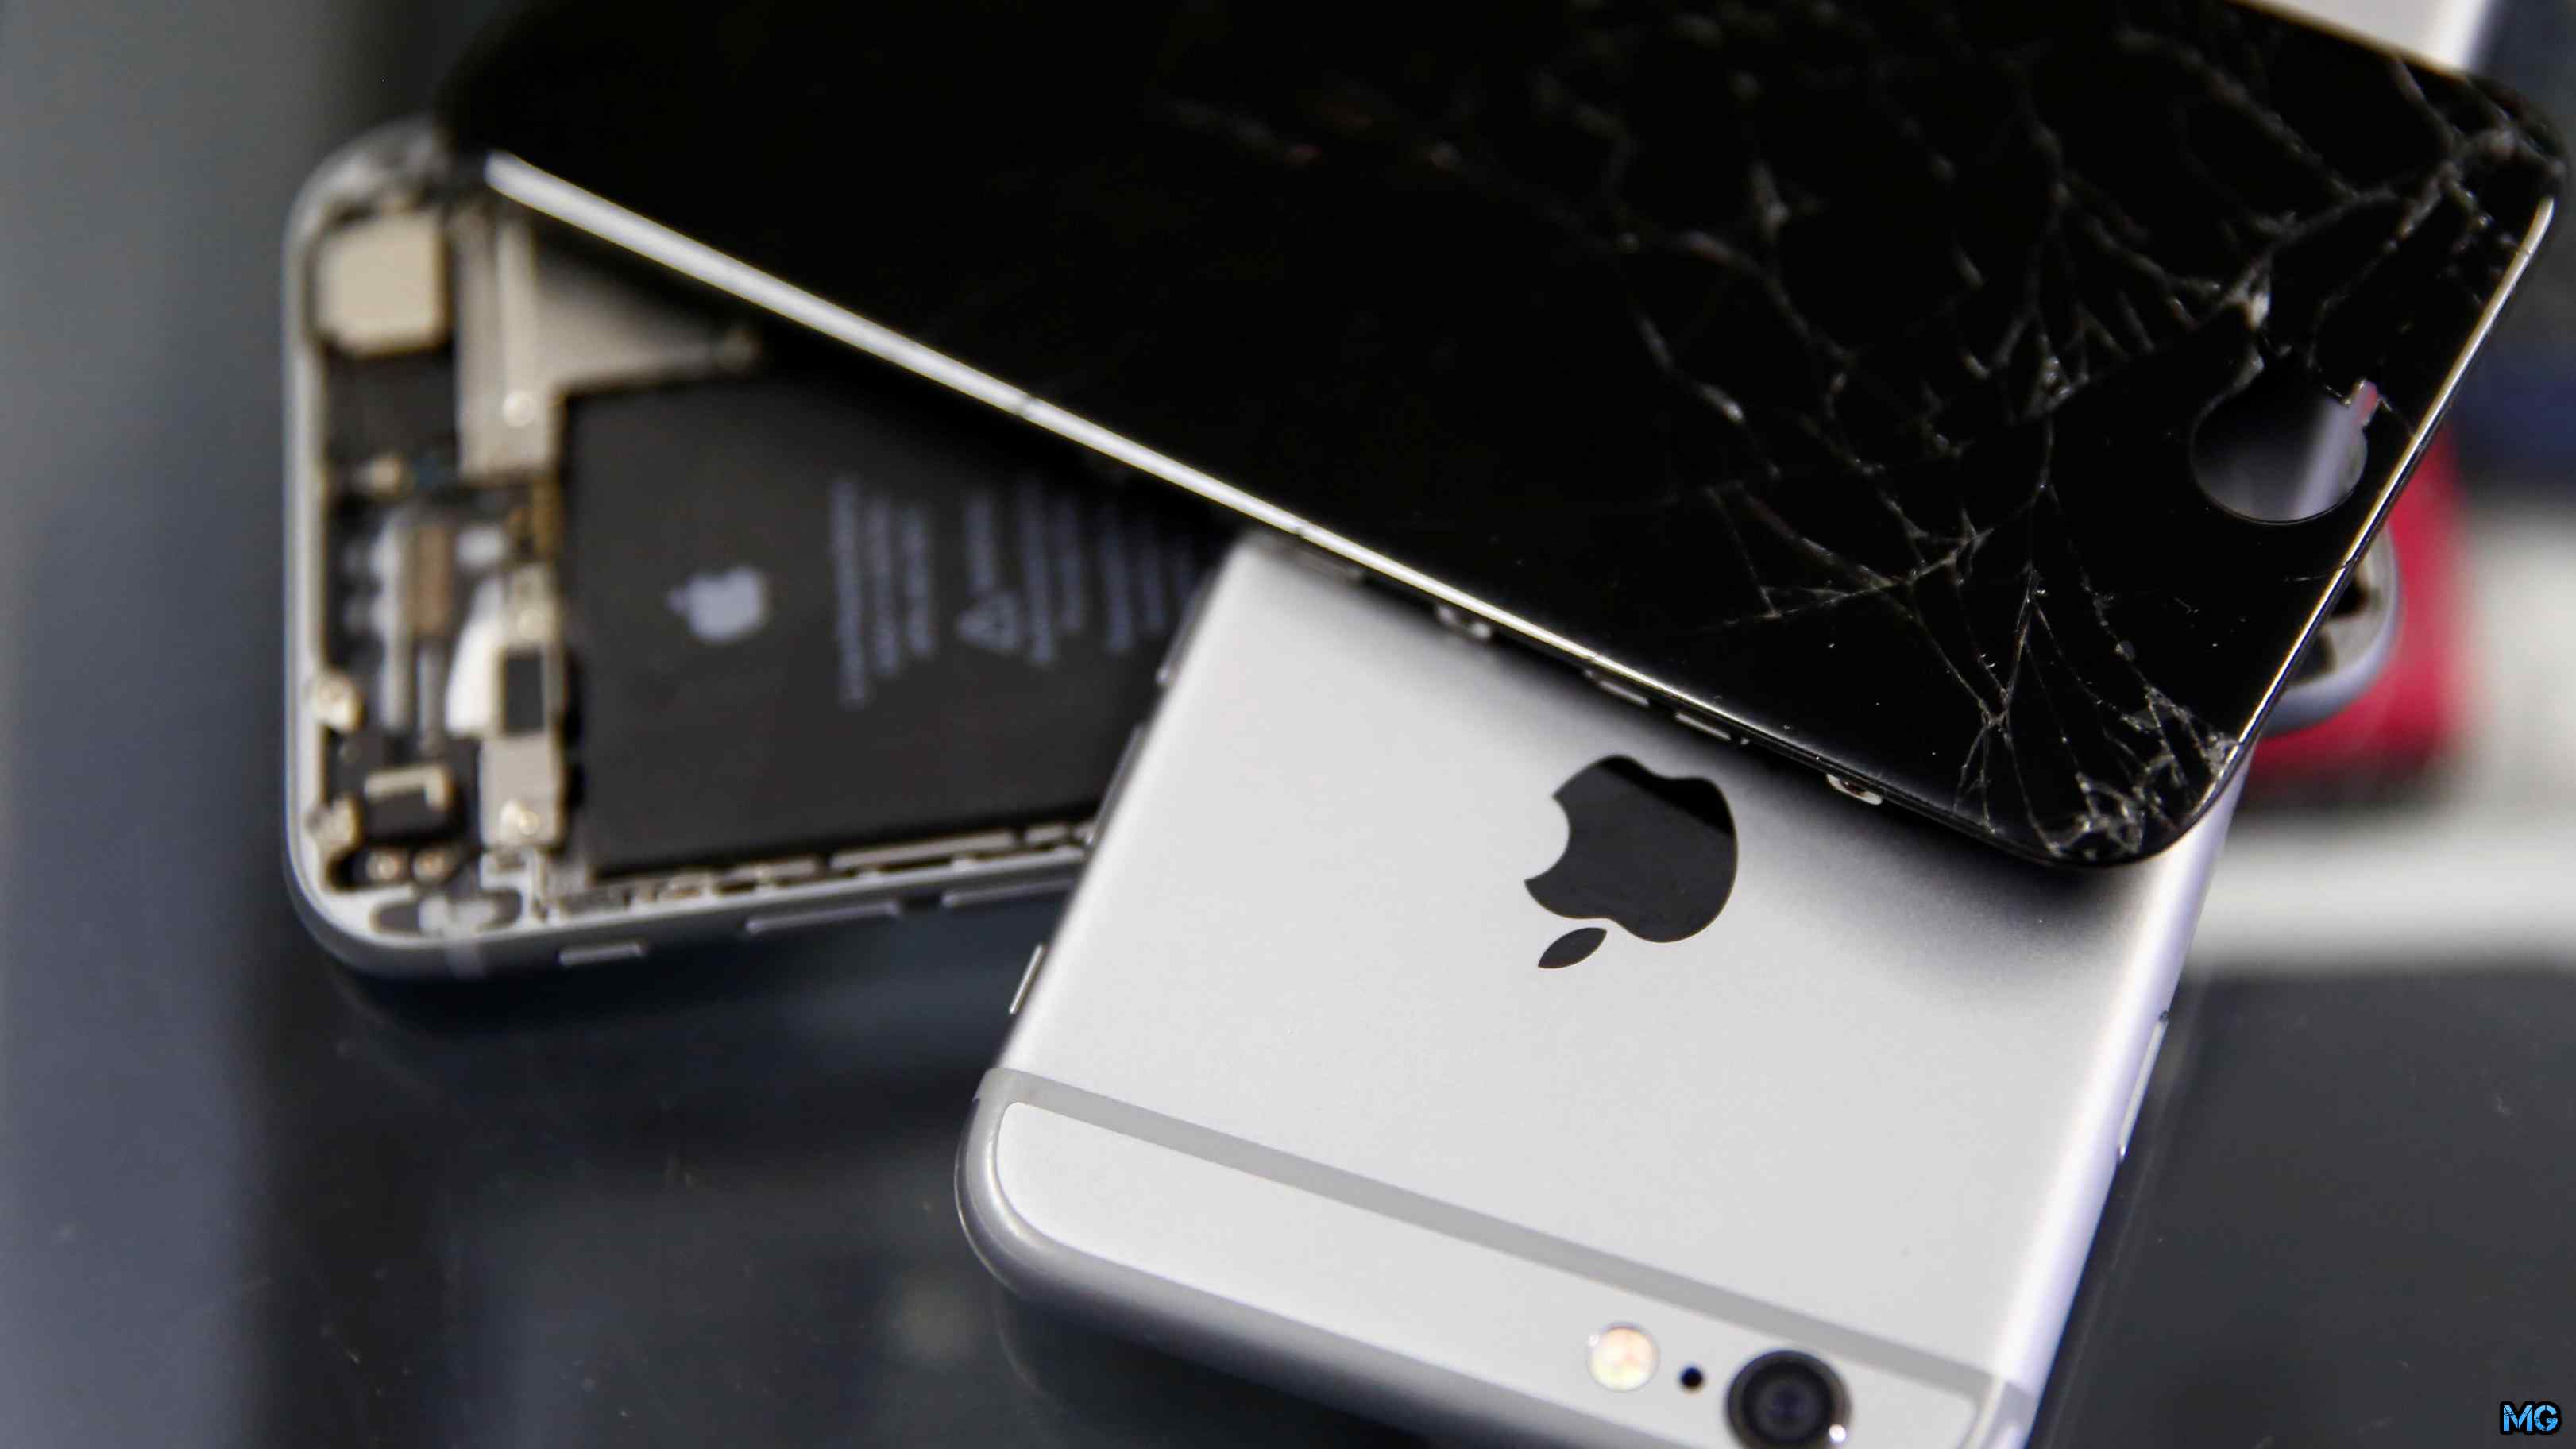 10 распространенных ошибок при использовании iphone и ipad | новости apple. все о mac, iphone, ipad, ios, macos и apple tv